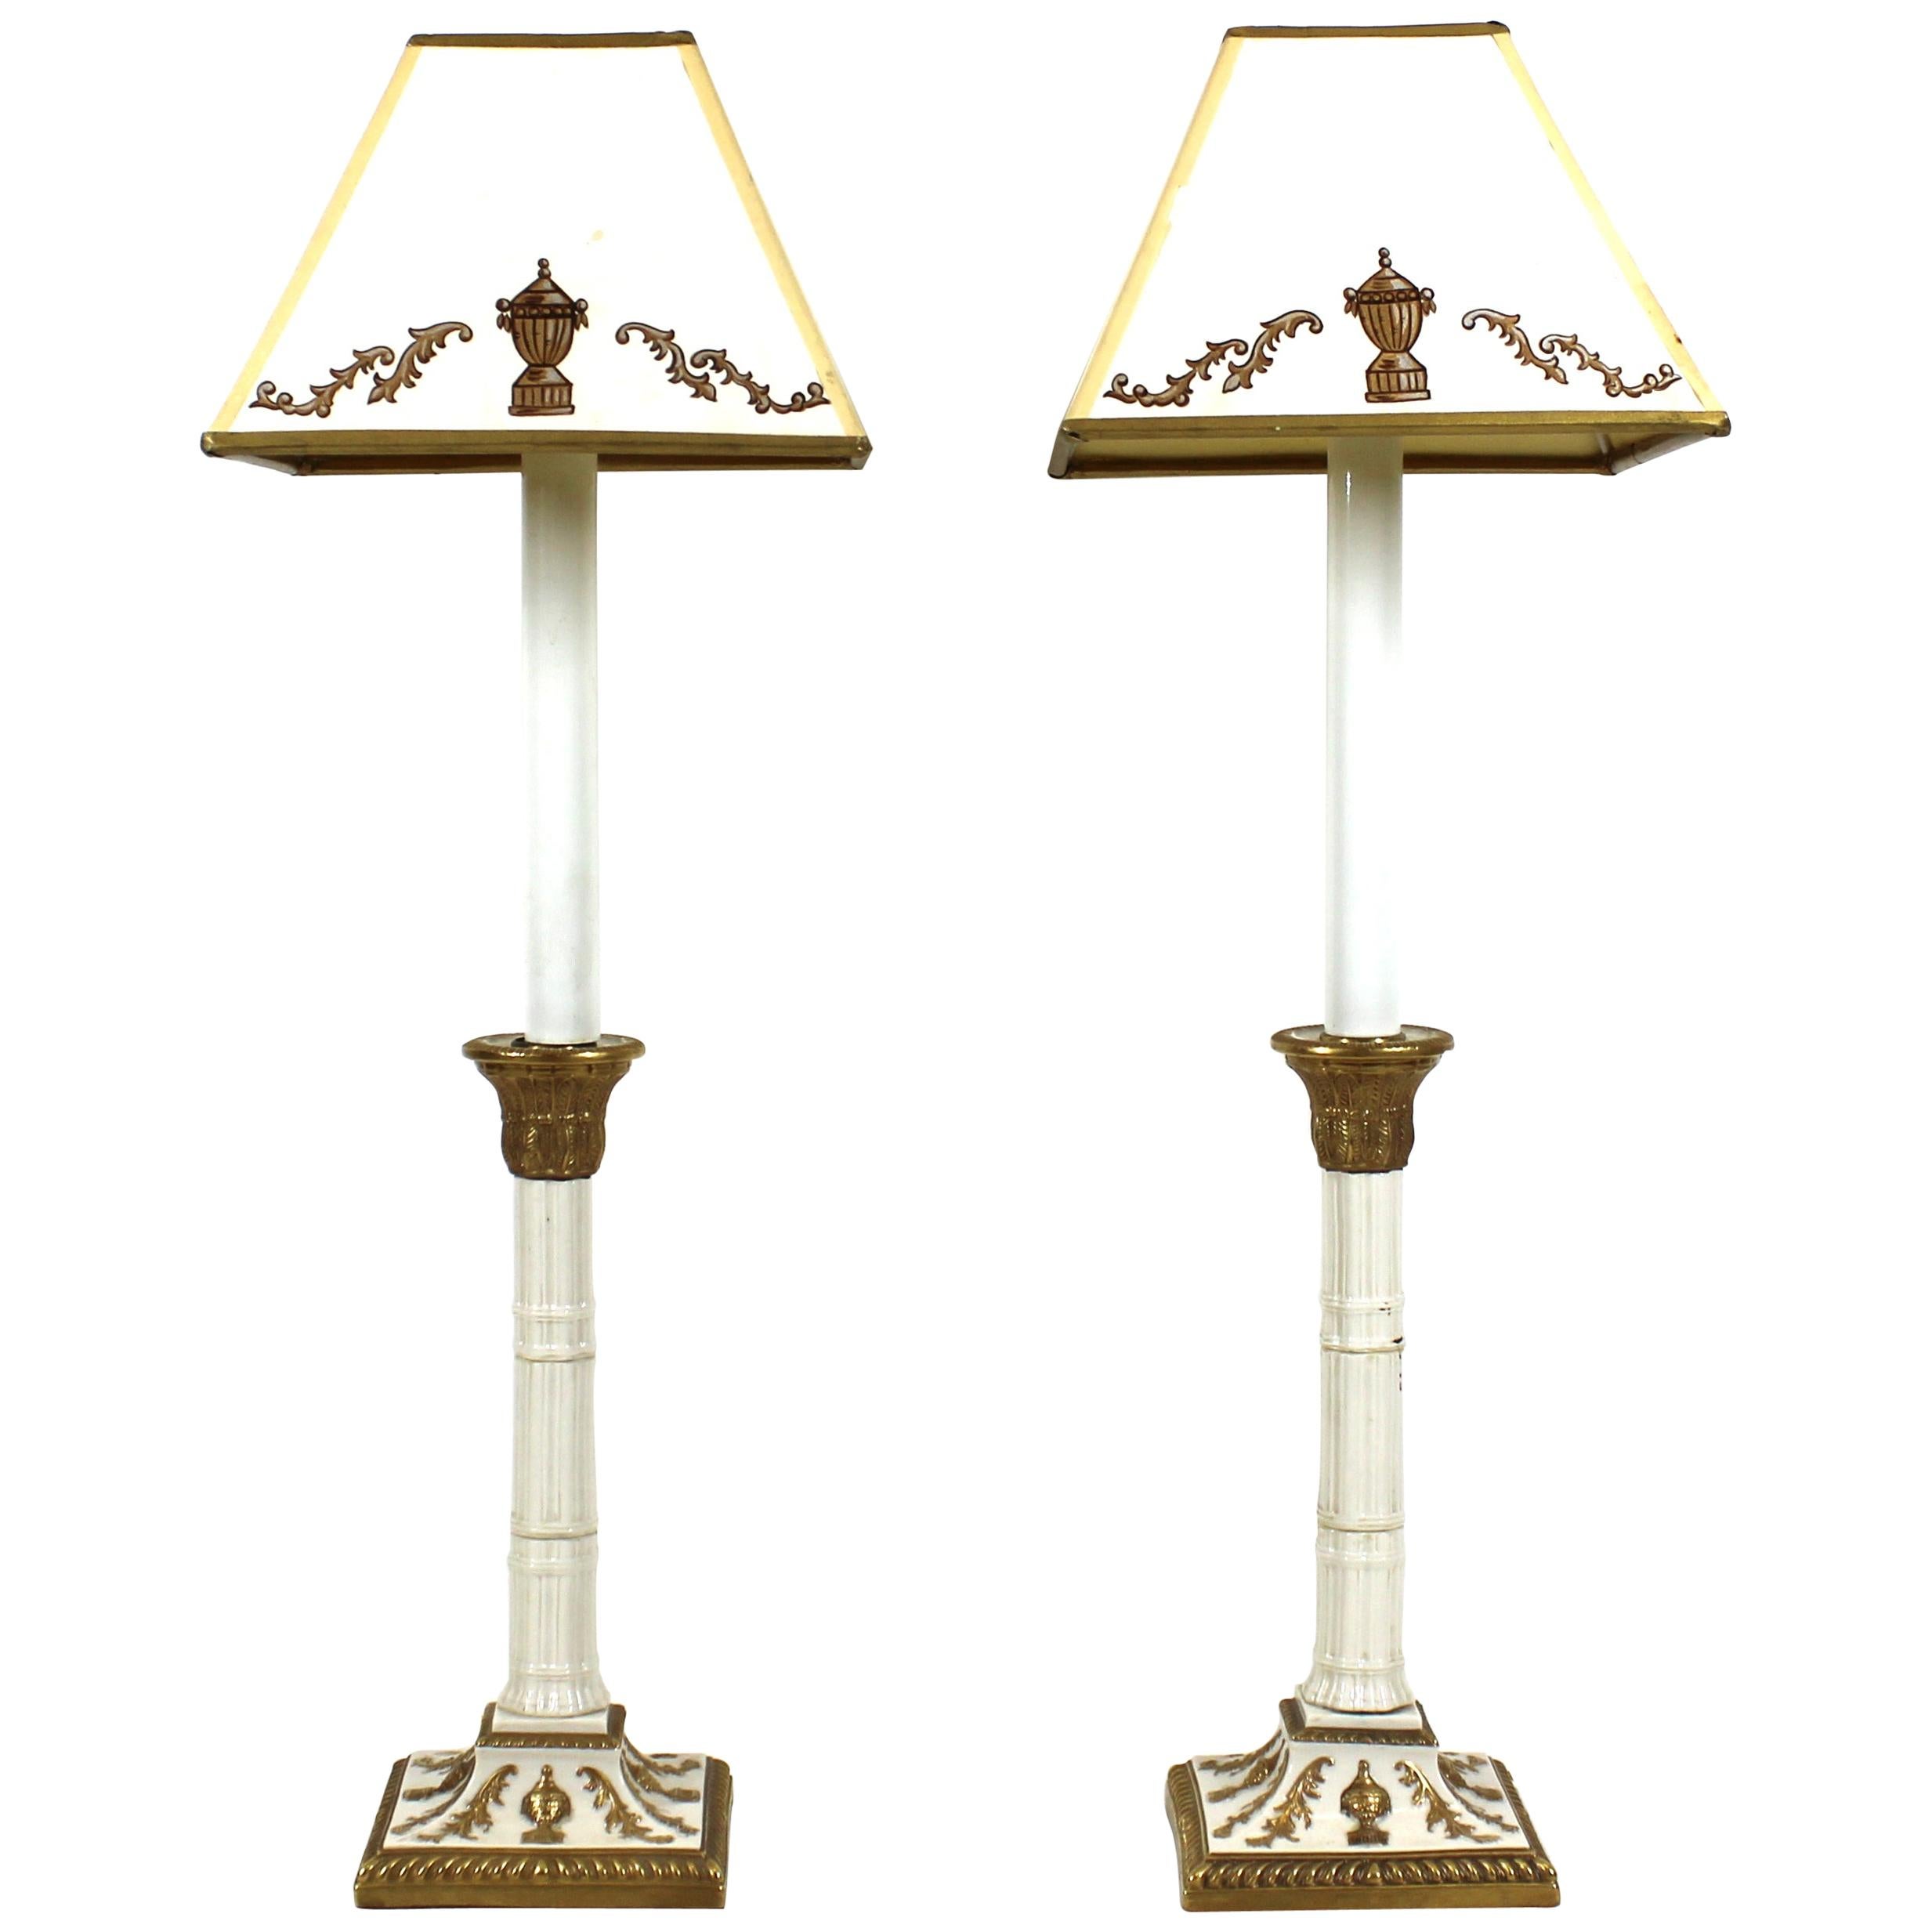 Neoklassizistische Tischlampen aus Porzellan im Revival-Stil